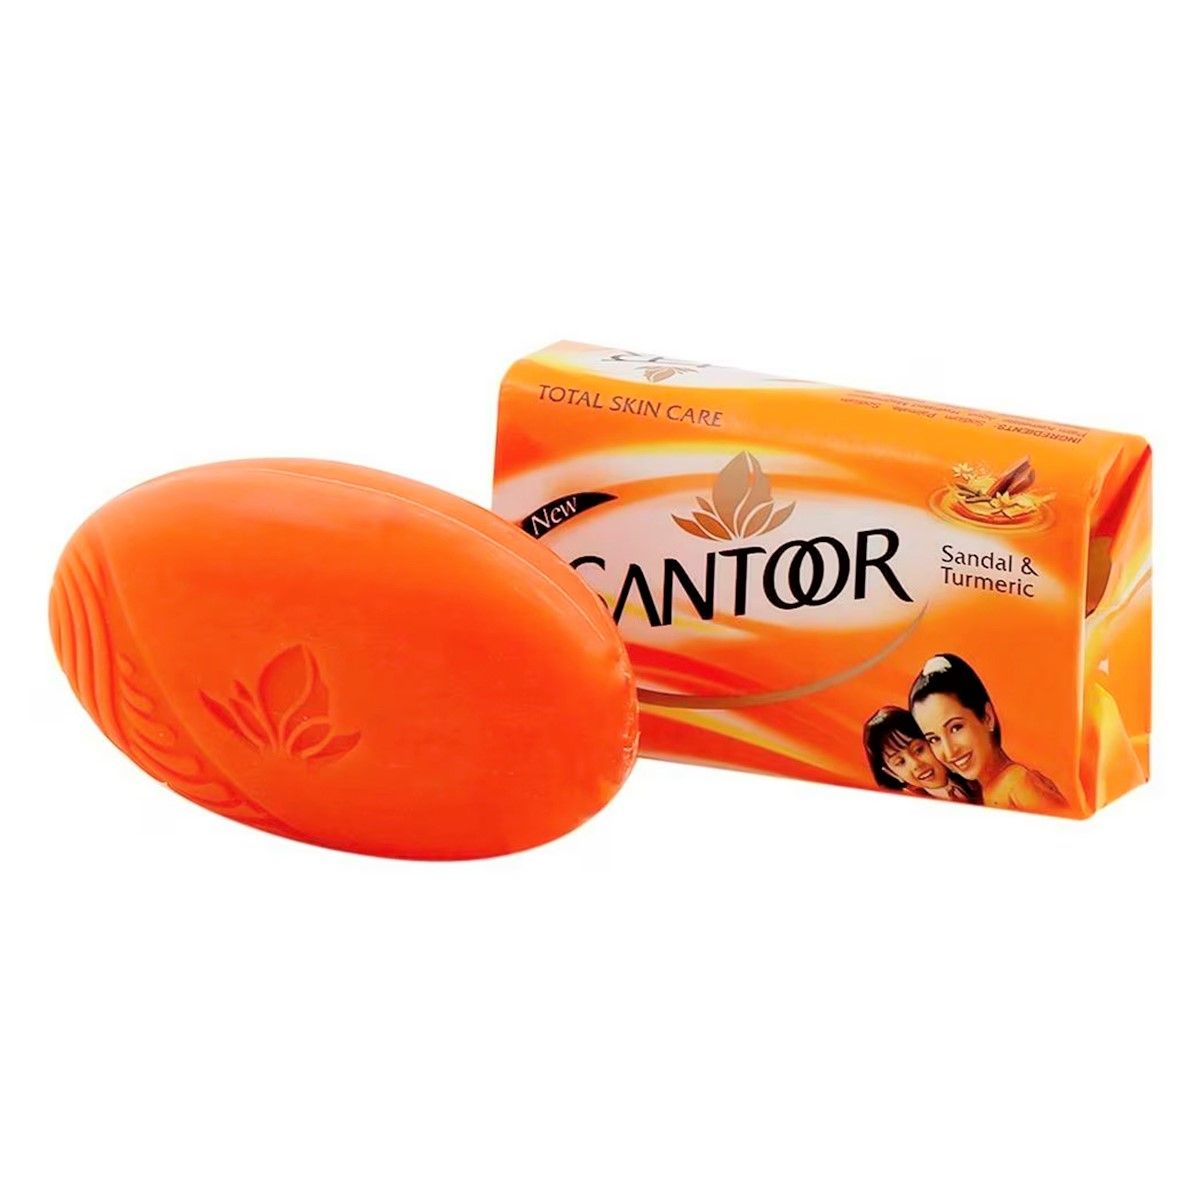 Buy Santoor Sandal & Turmeric Soap, 150 gm Online